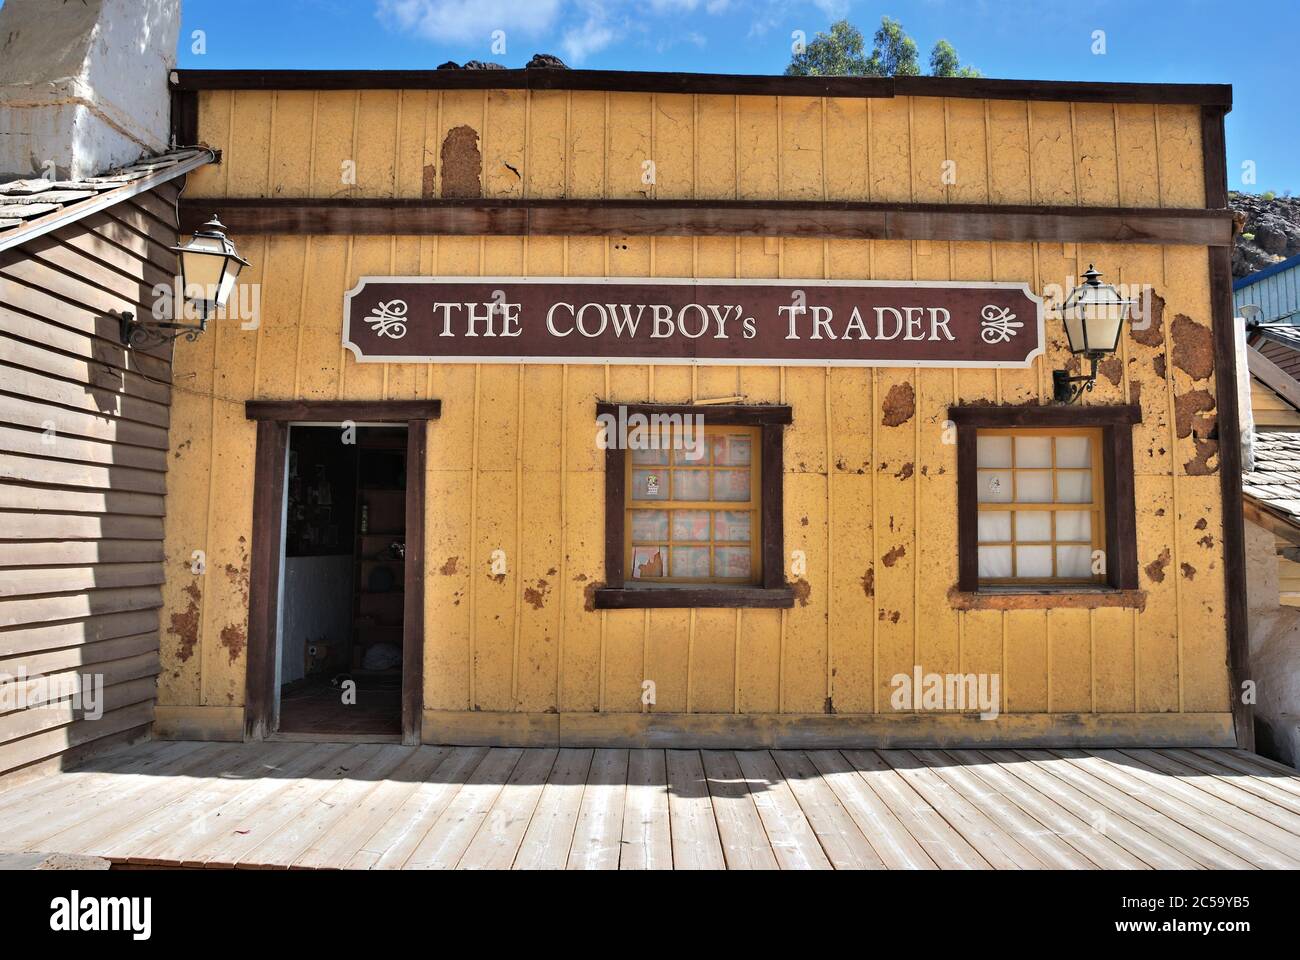 SIOUX CITY, GRAN CANARIA - 20 FÉVRIER 2014 : Maison de commerçants de Cowboys de la ville sauvage de l'ouest à Sioux City. Attraction touristique populaire sur l'île de Gran Canaria Banque D'Images